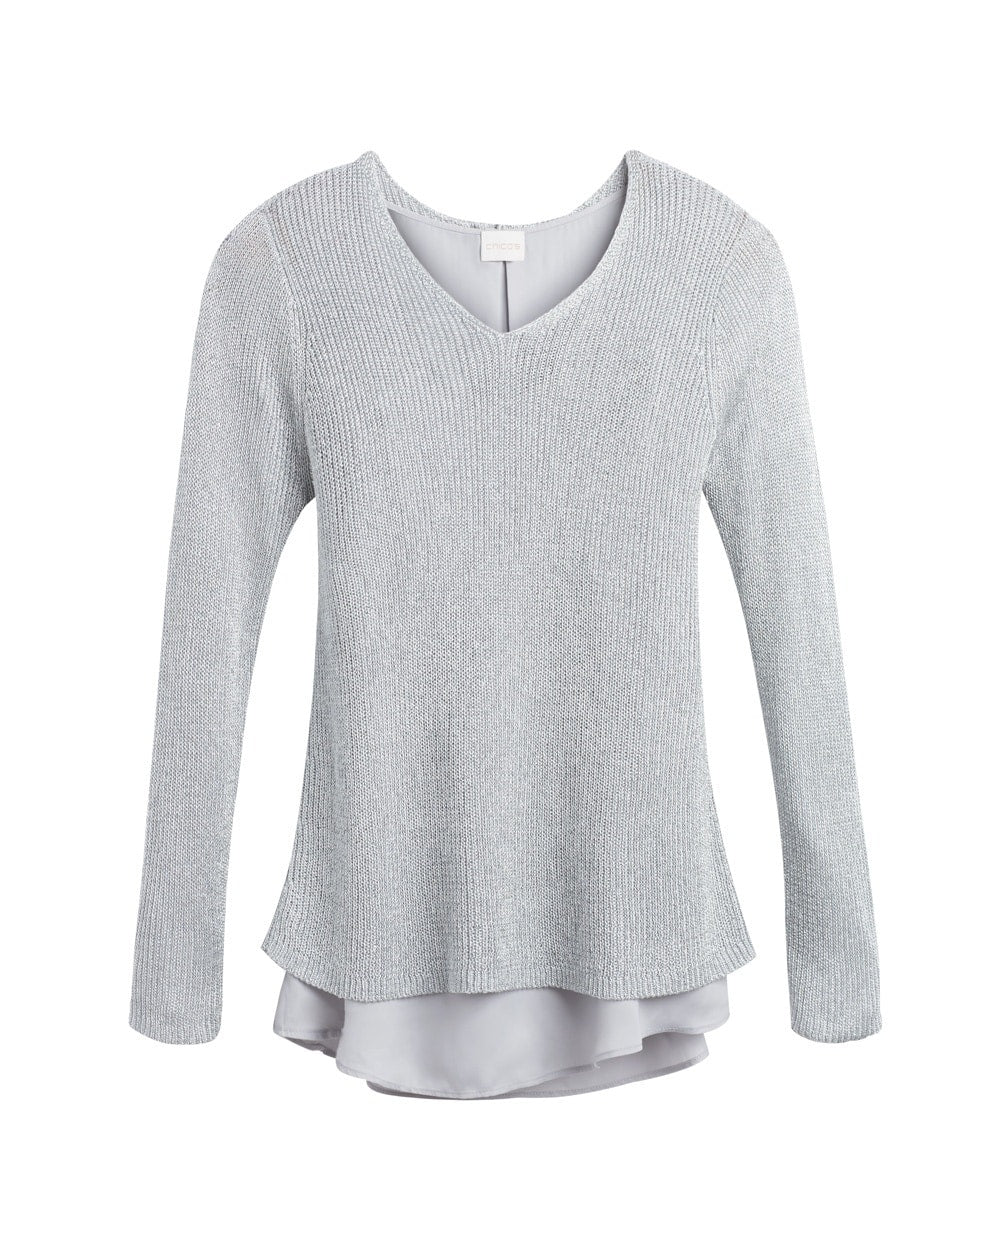 Chico’s Size 3 (XL) Silver Gray Shine Stitch Aindri Pullover Sweater, new/NWT